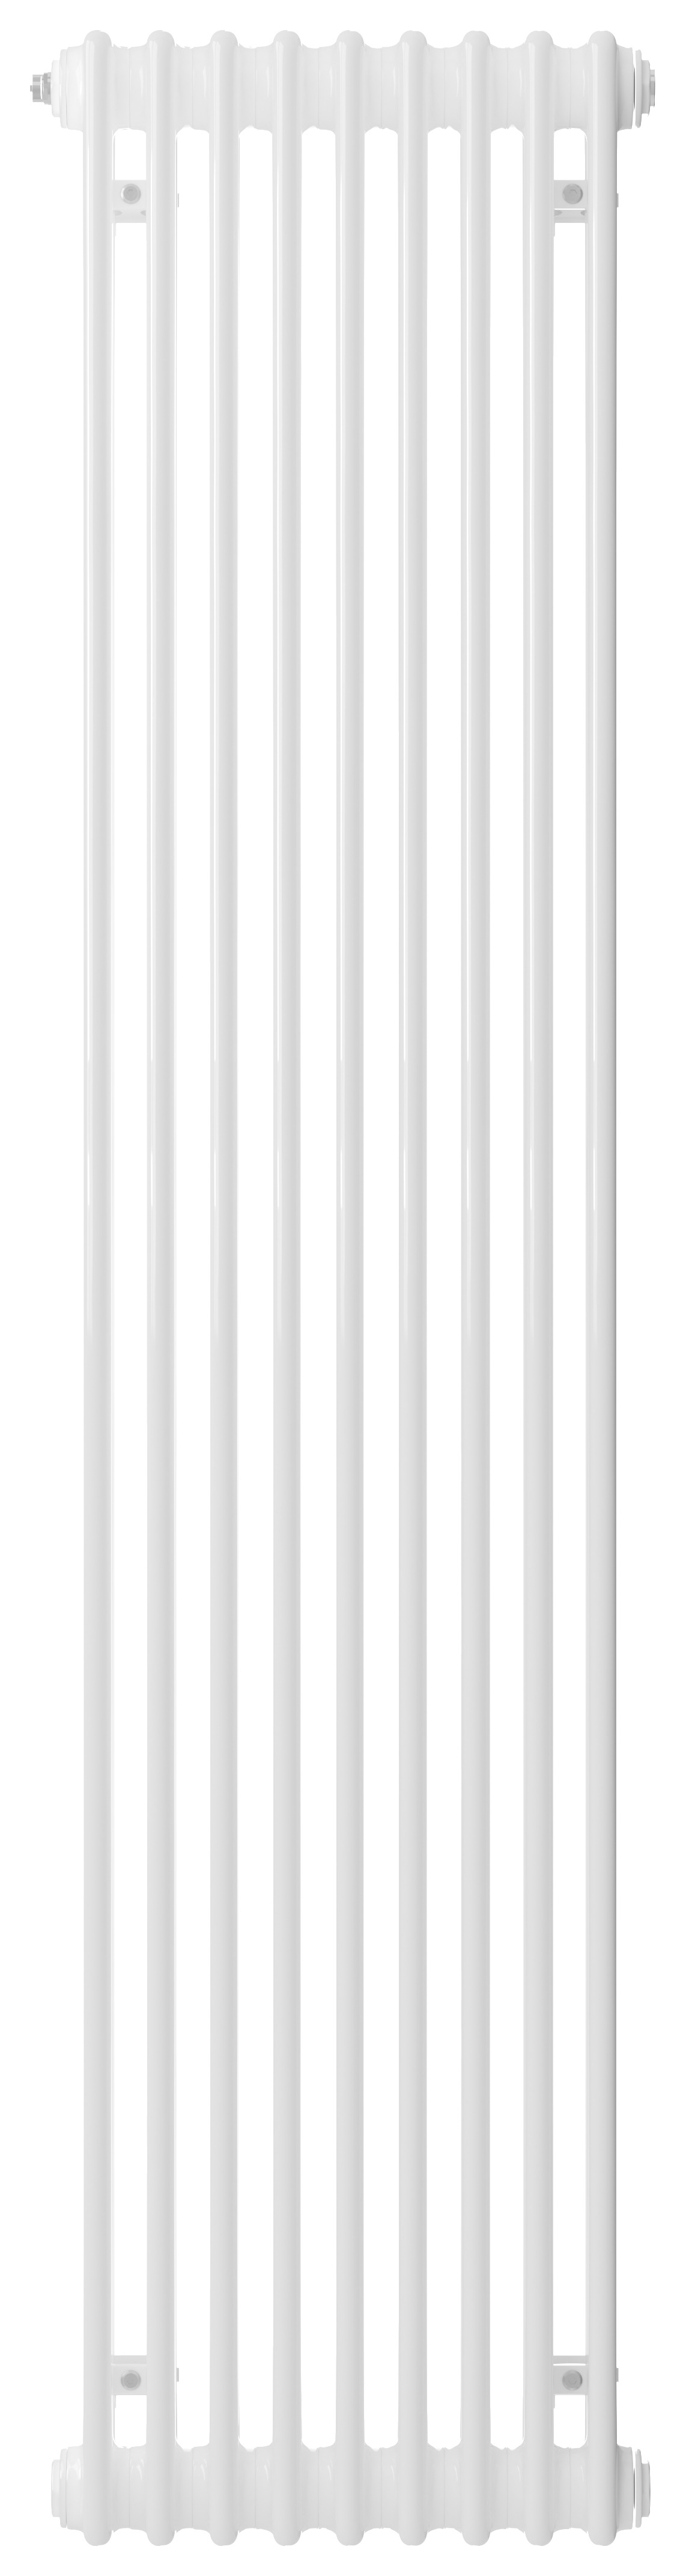 Henrad 2 Column Vertical Designer Radiator - White 2000 x 348 mm